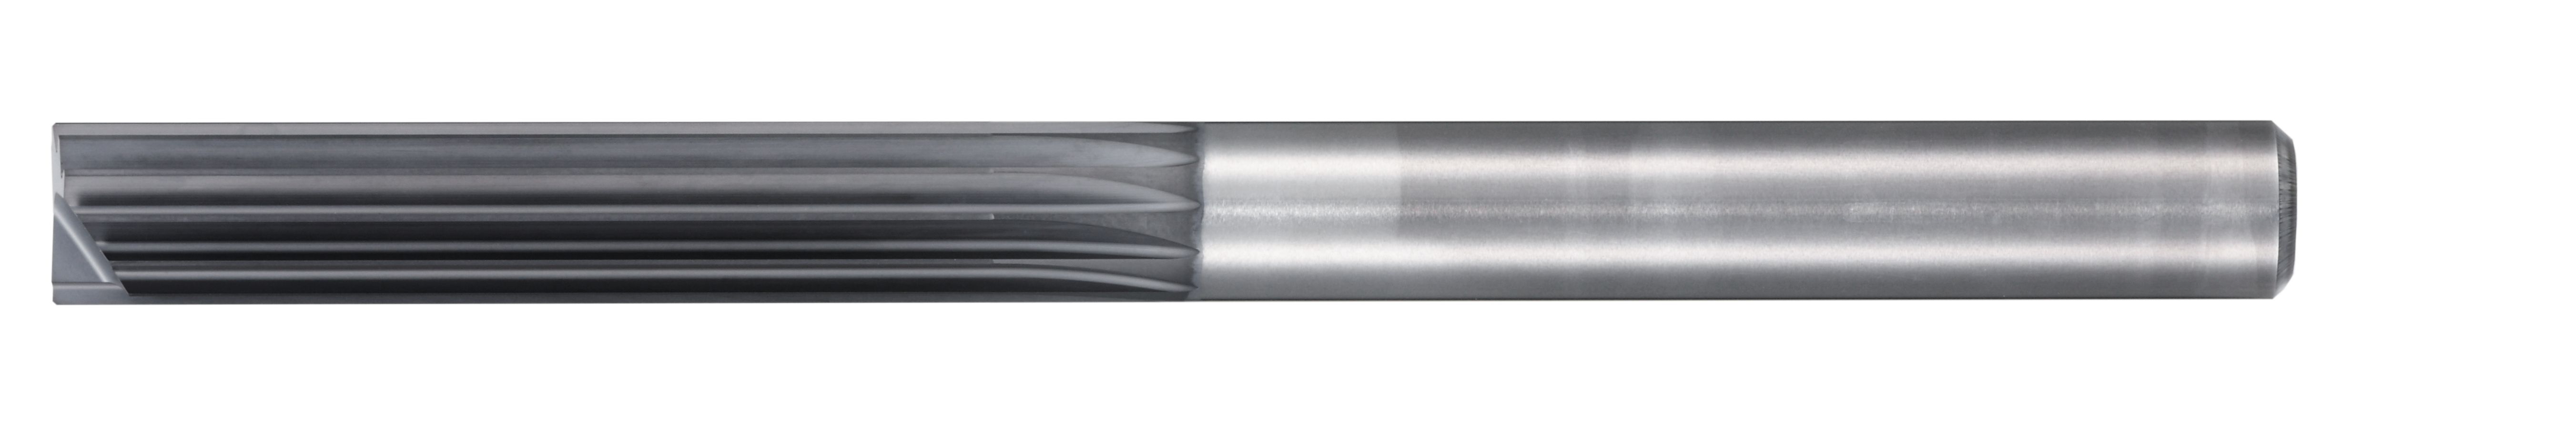 開槽/承擔Multi-Flute端銑刀與6719年底長笛CR100碳纖維增強塑料